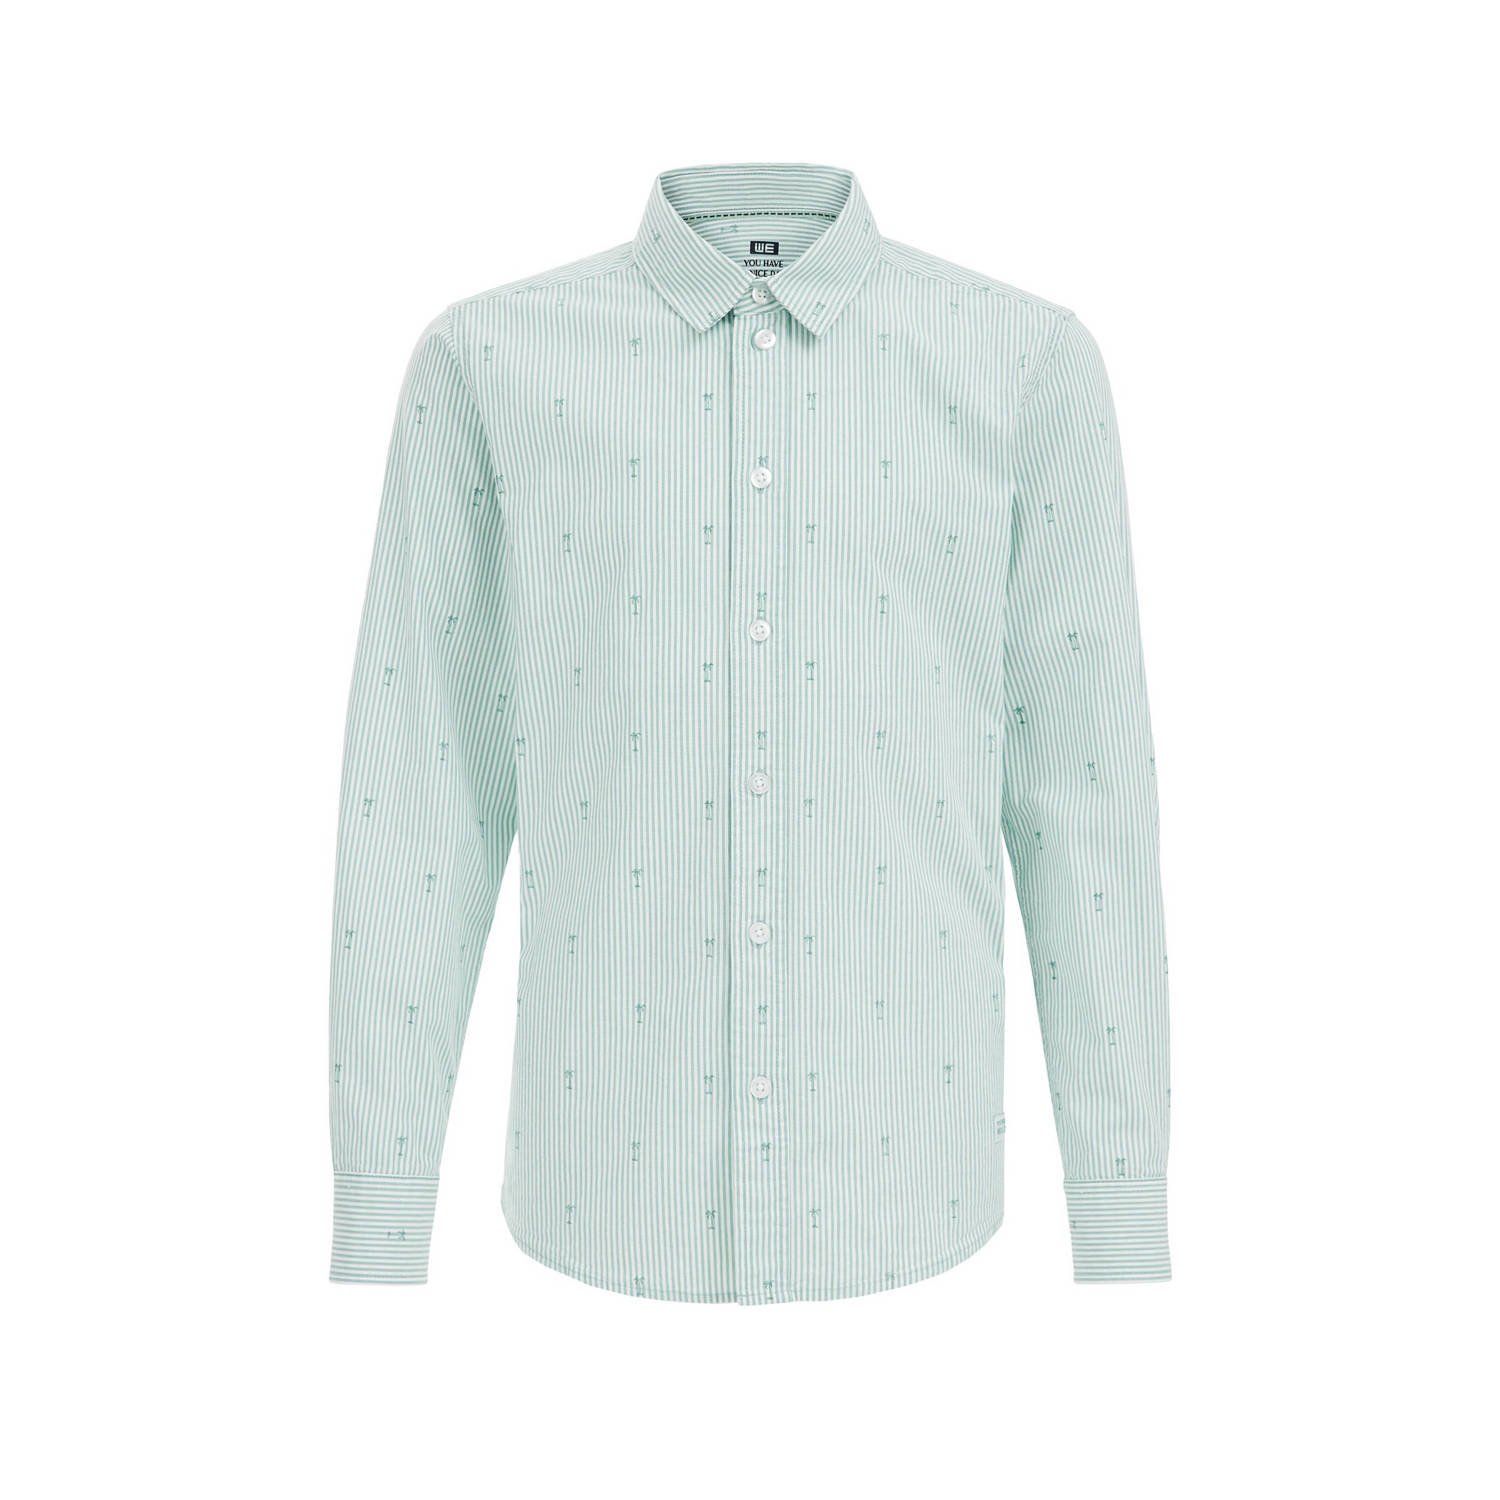 WE Fashion overhemd met all over print groen wit Jongens Katoen Klassieke kraag 110 116